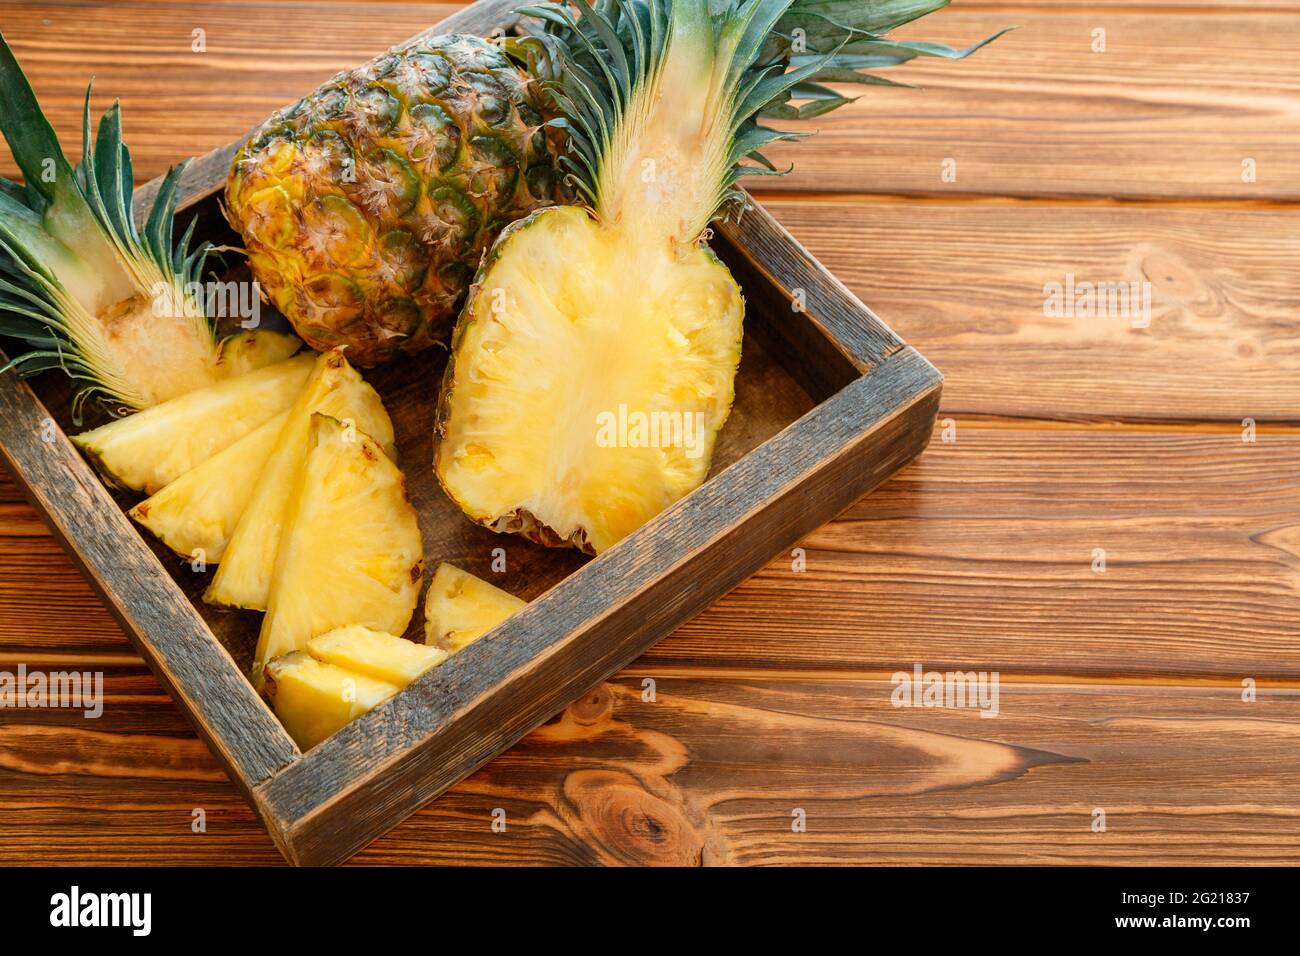 Ananas a fette. Bromelain tropicale frutta estate ananas metà e ananas intero su tavola marrone scuro in scatola di legno con spazio di copia Foto Stock